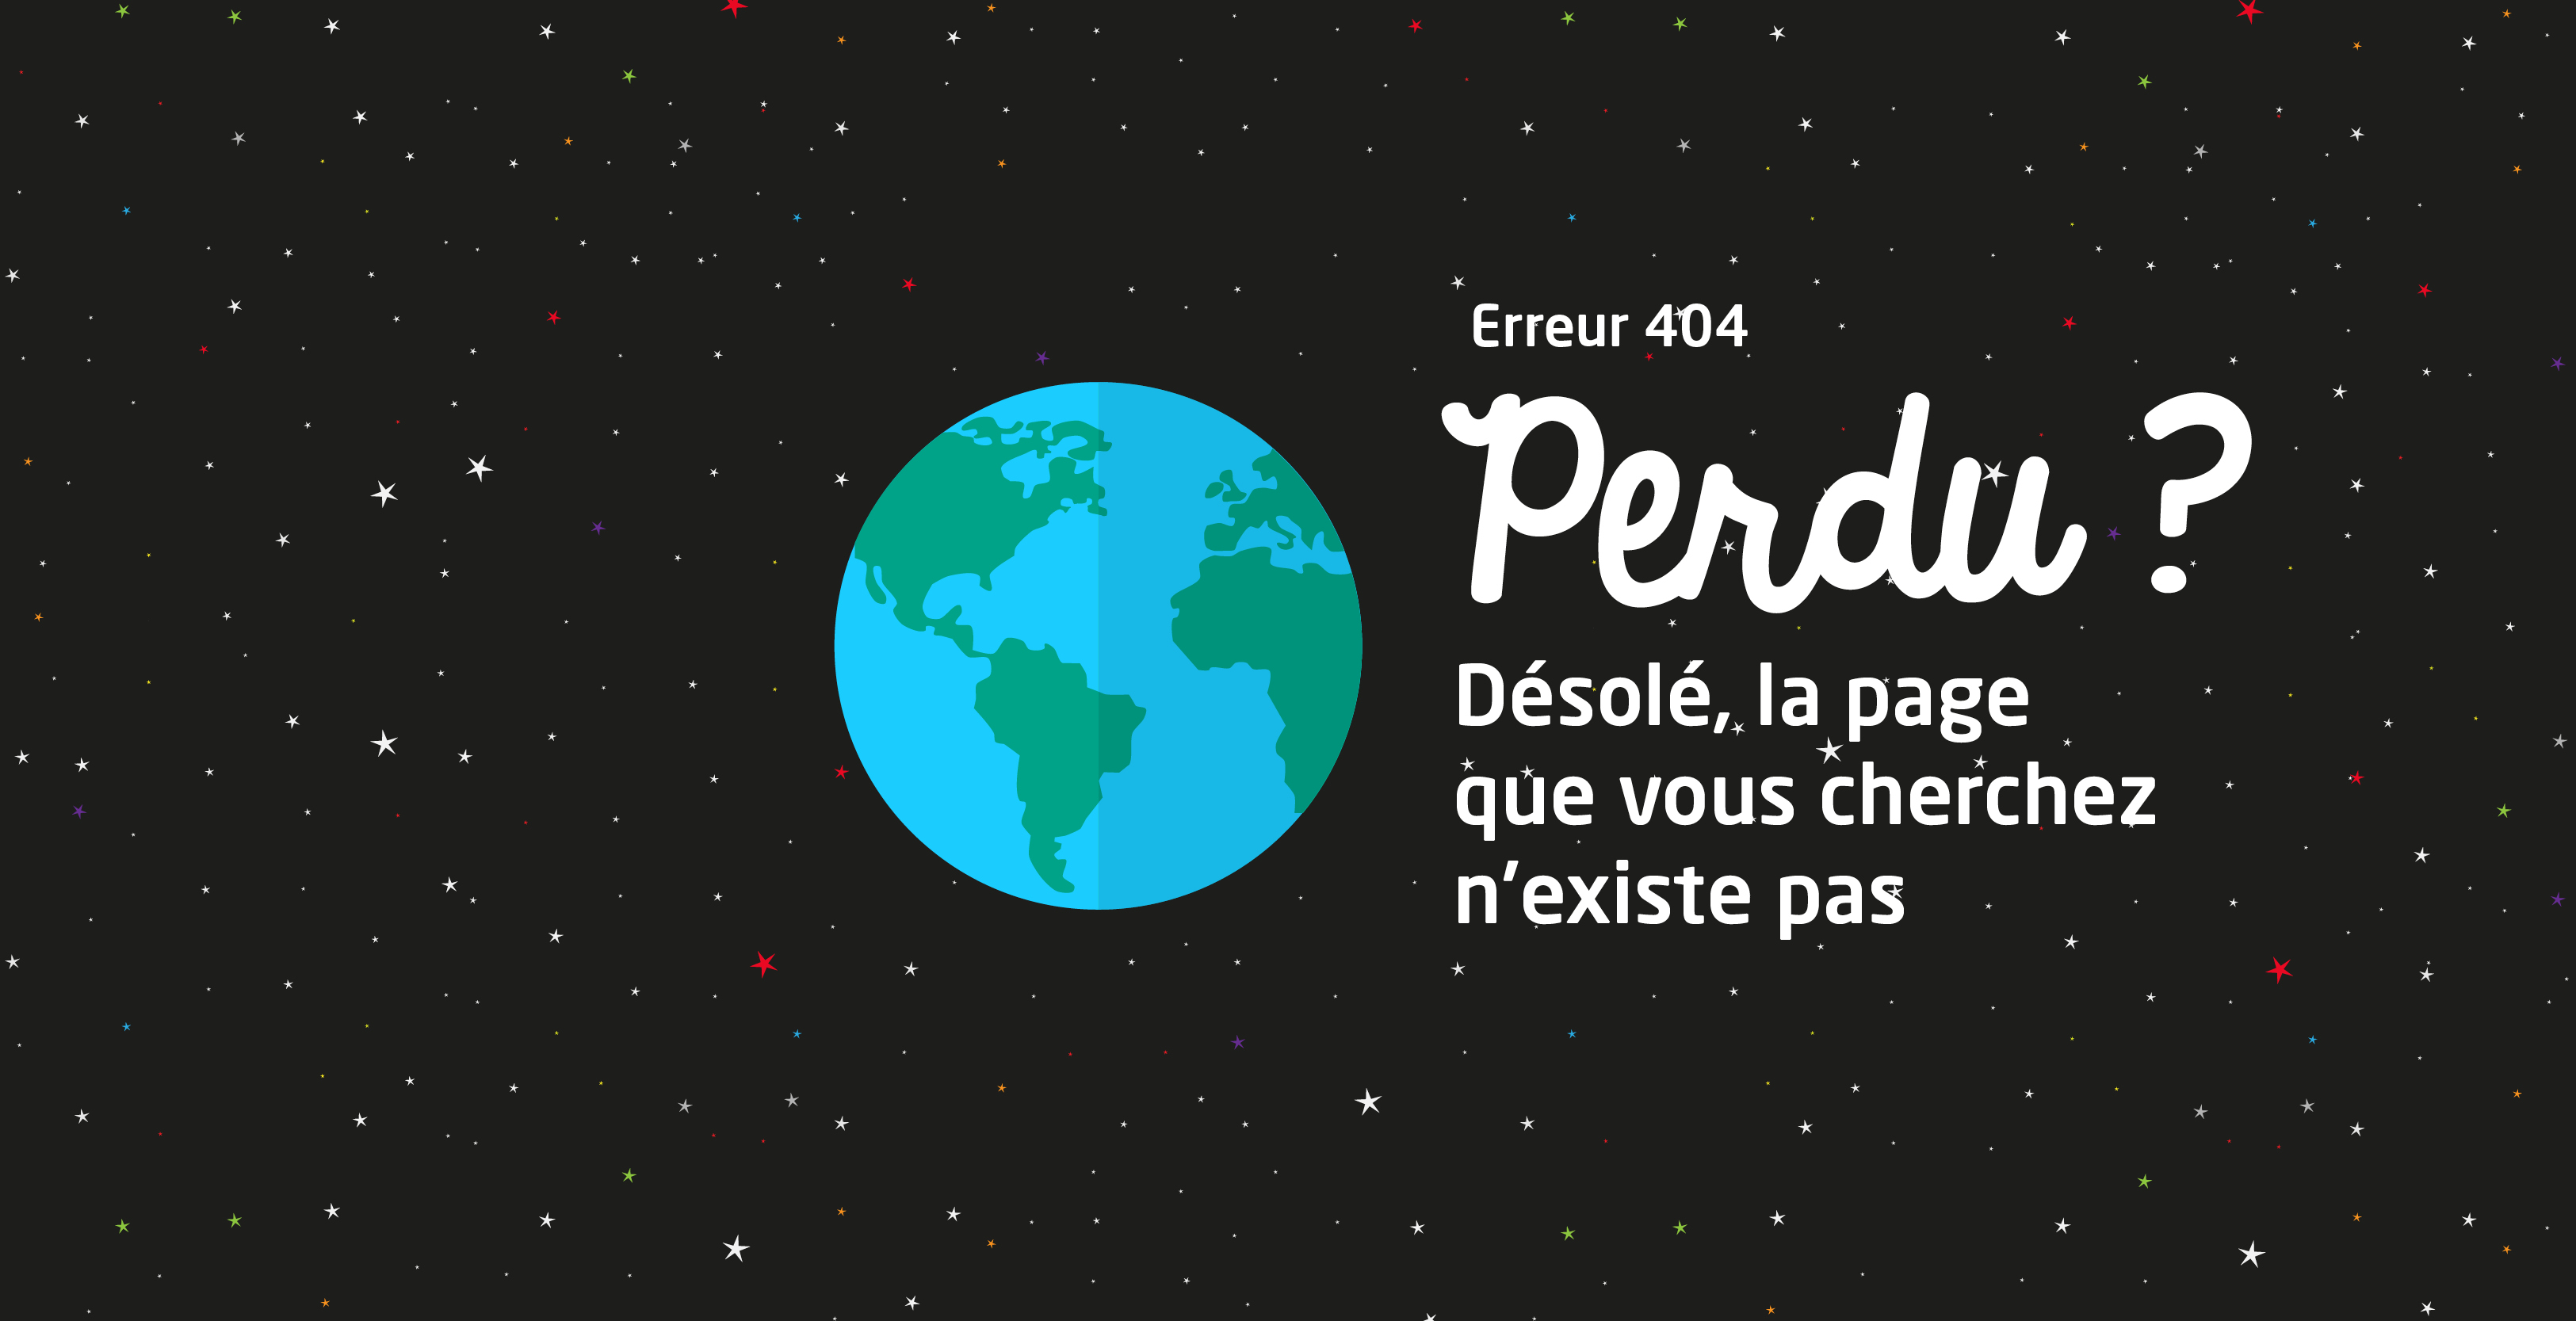 Erreur 404 : La page que vous cherchez n'existe pas